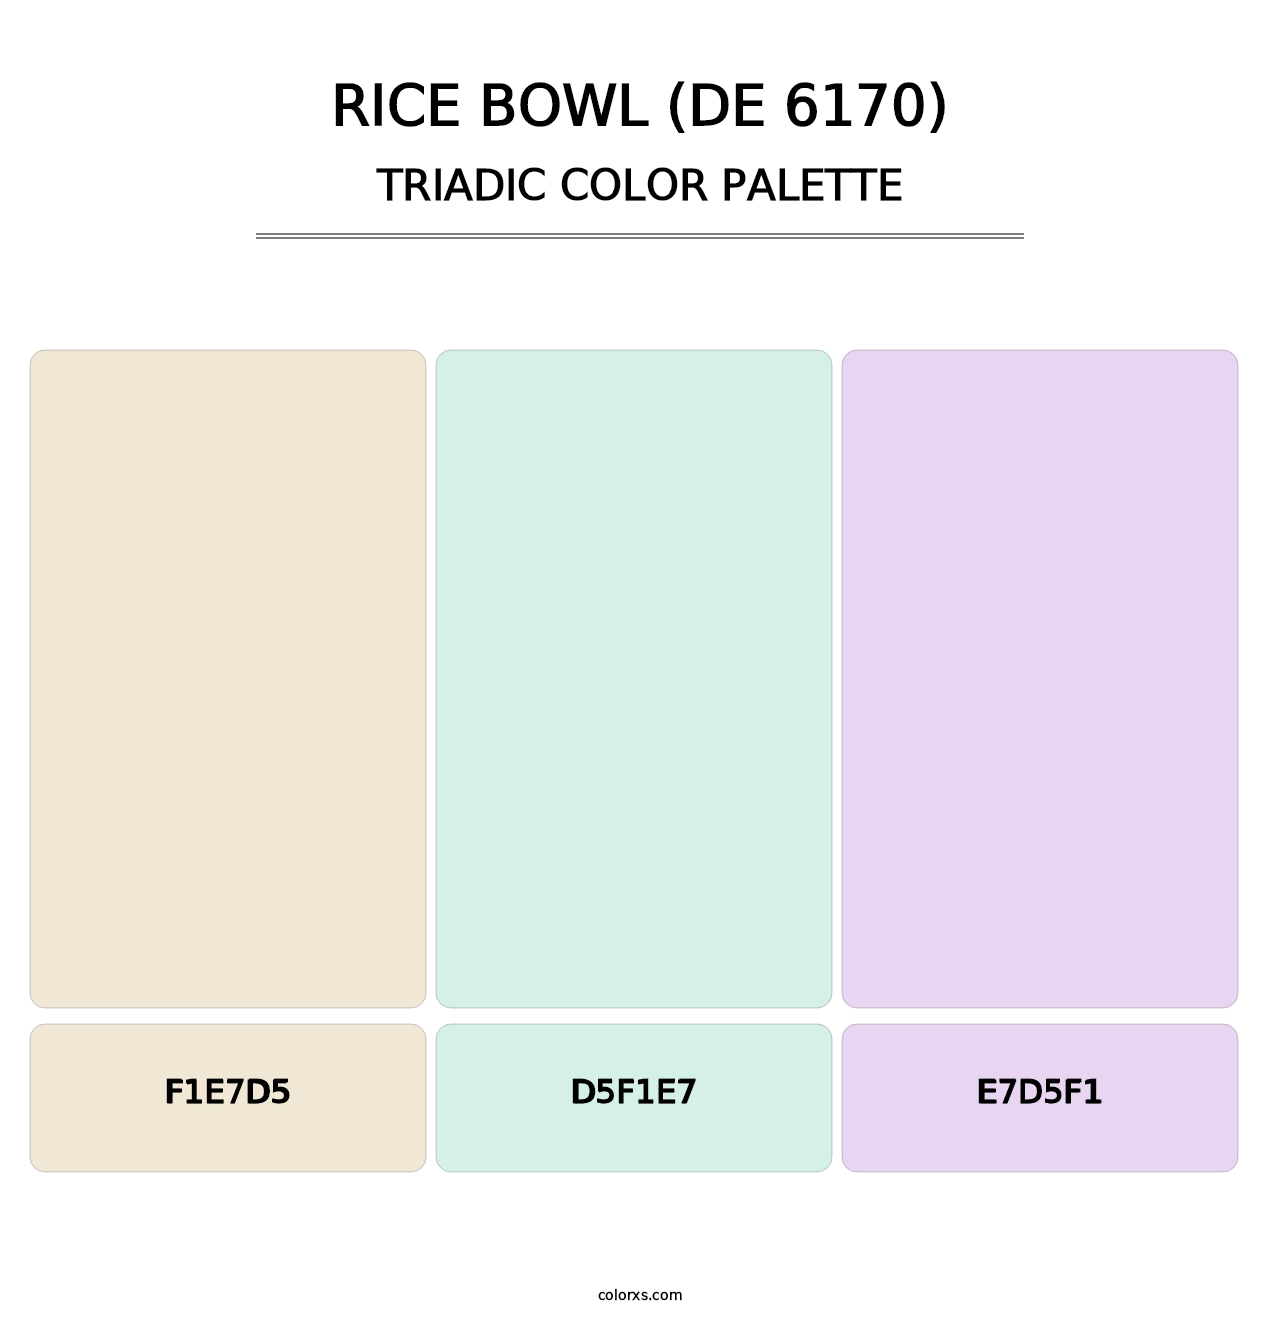 Rice Bowl (DE 6170) - Triadic Color Palette